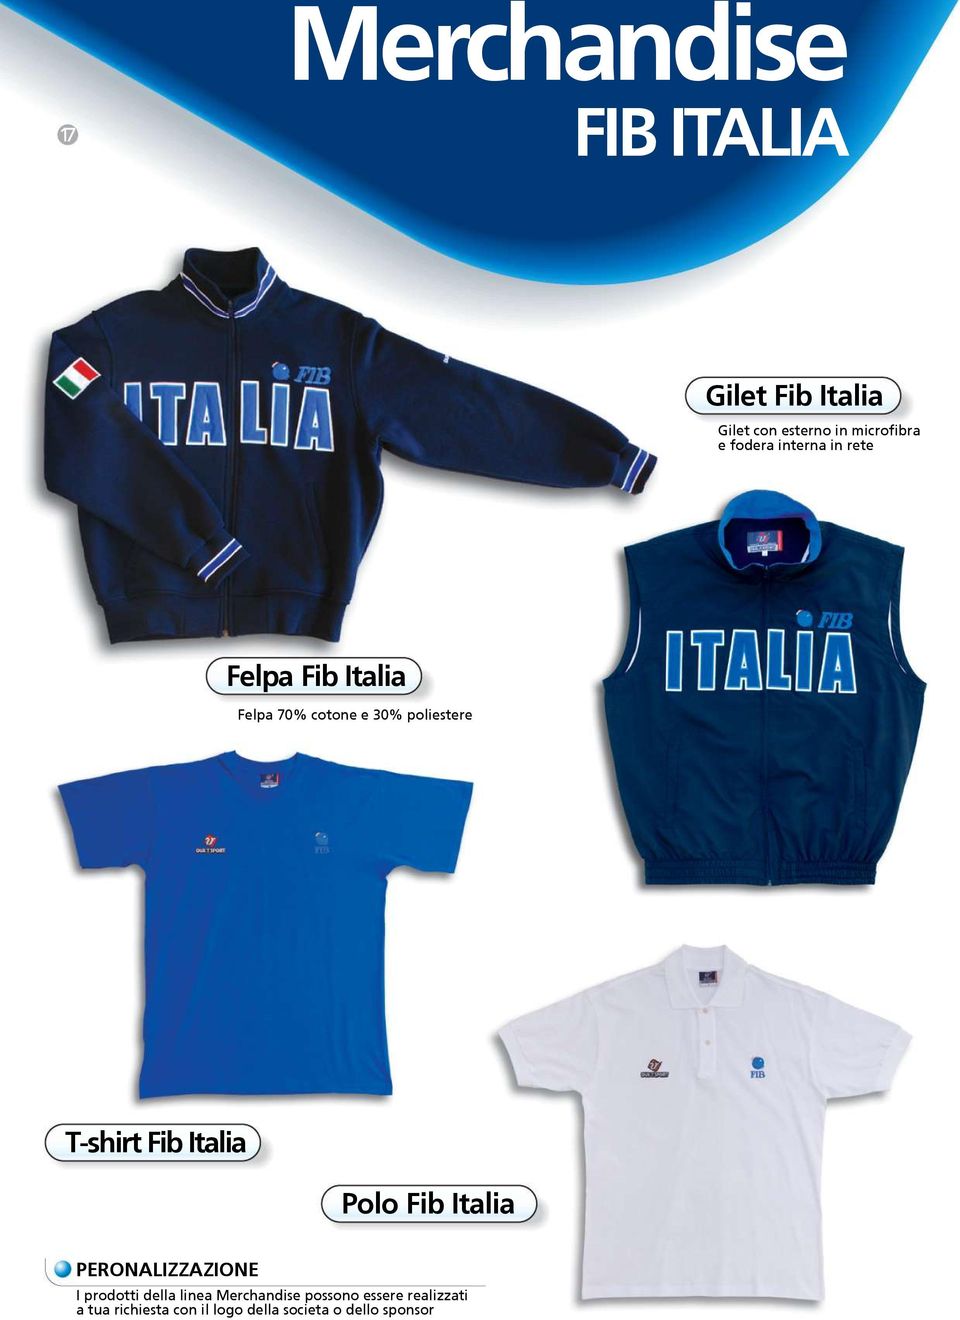 T-shirt Fib Italia Polo Fib Italia PERONALIZZAZIONE I prodotti della linea